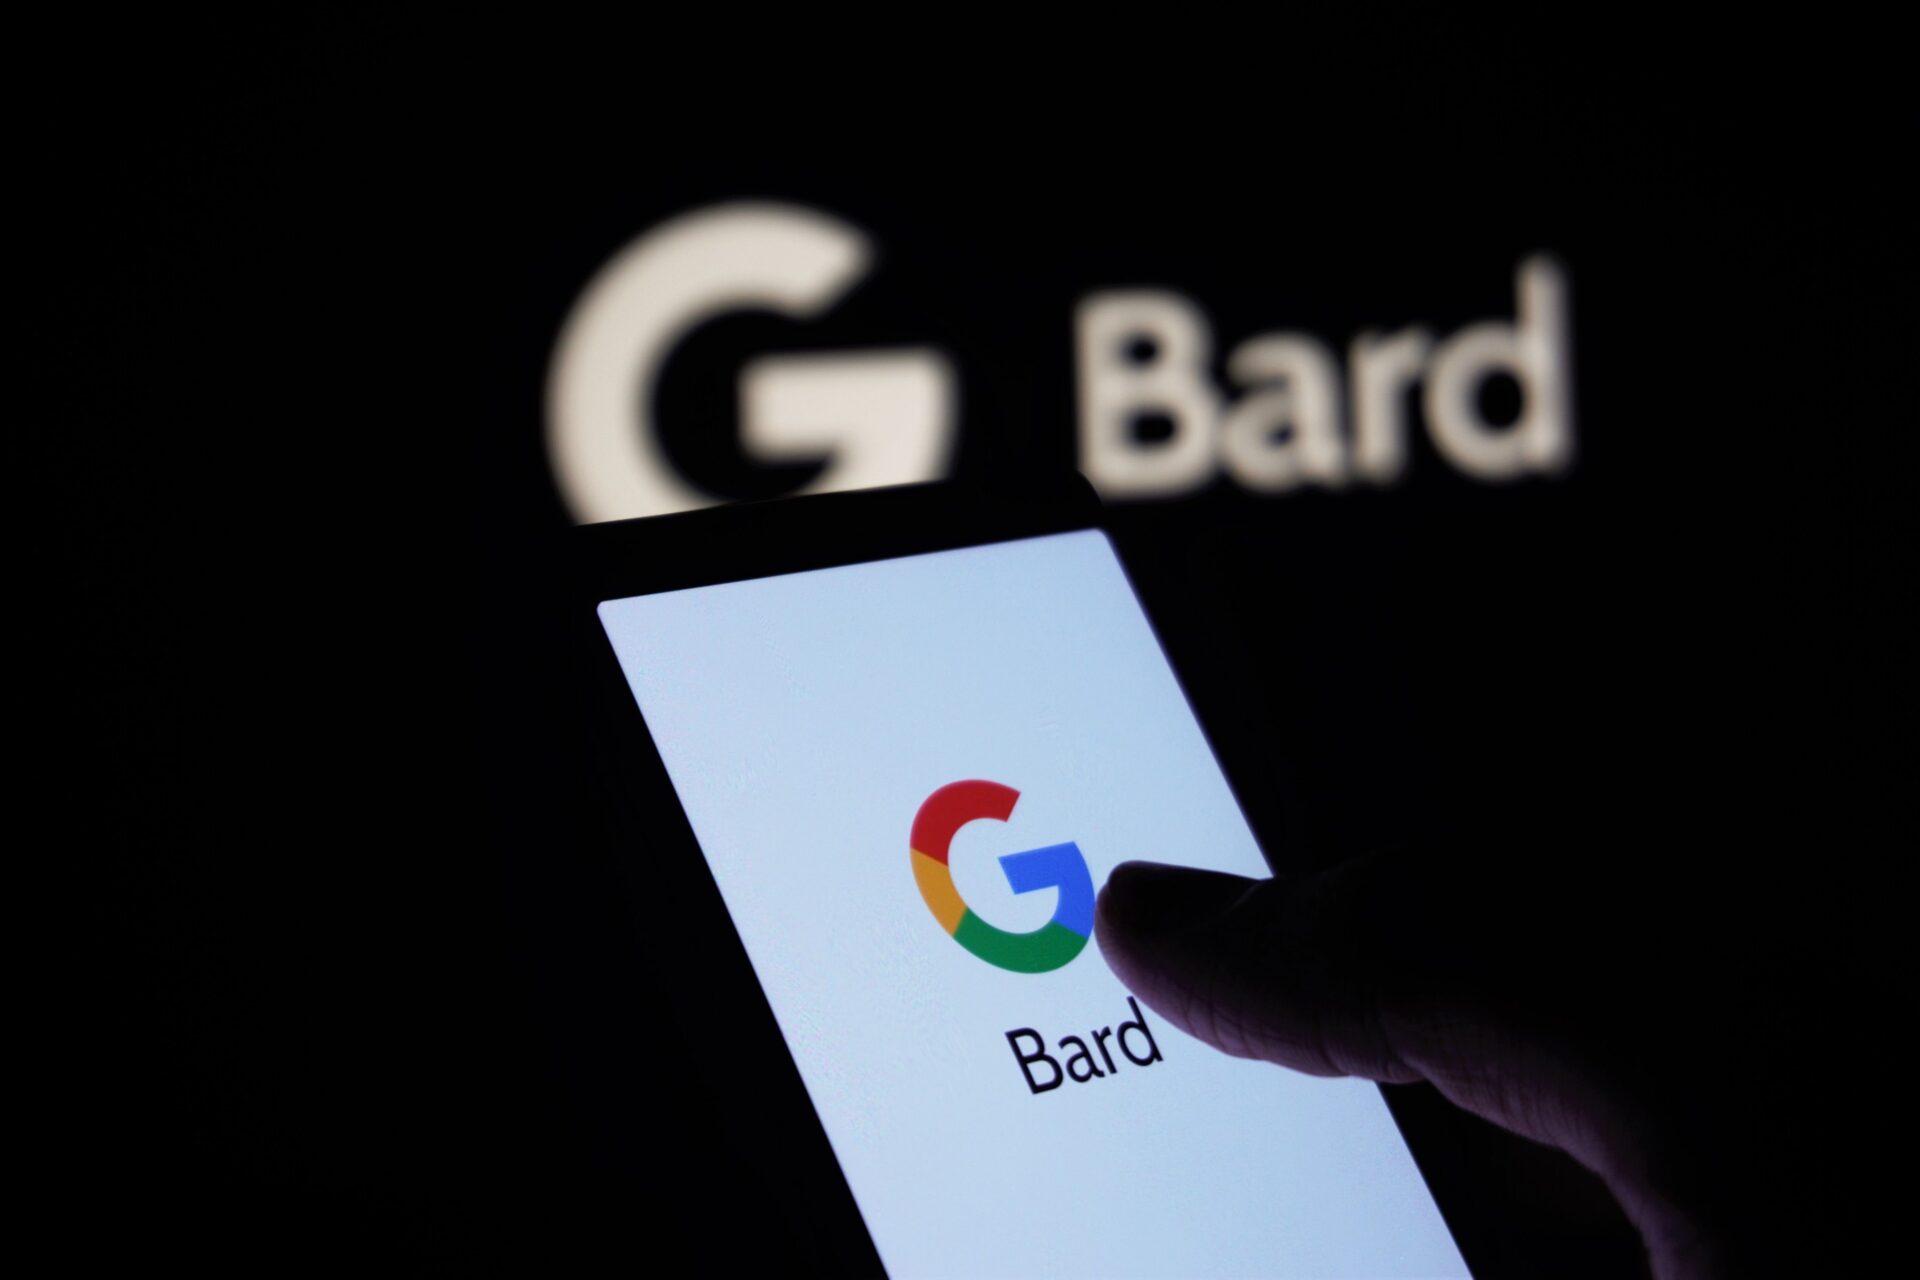 Smartfon z wyświetlającym się na ekranie logiem Google i podpisem Bard